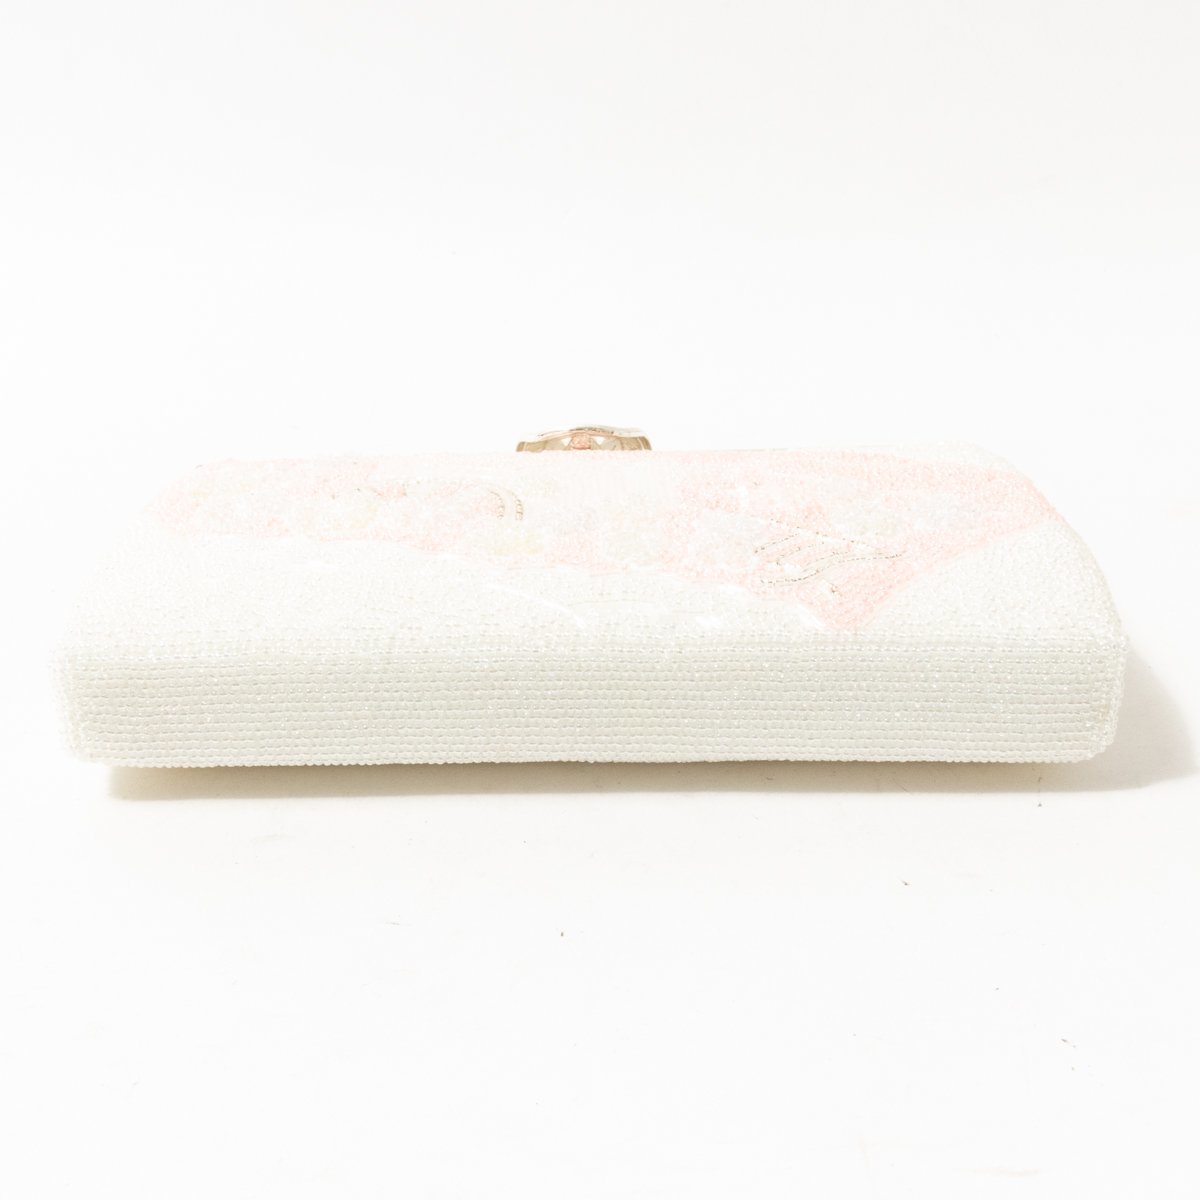 ビーズバッグ ホワイトxピンク ハンドバッグ ミニバッグ シルバー金具 綺麗め 花柄デザイン セレモニー 上品 bag 鞄 婦人 女性 レディース_画像4